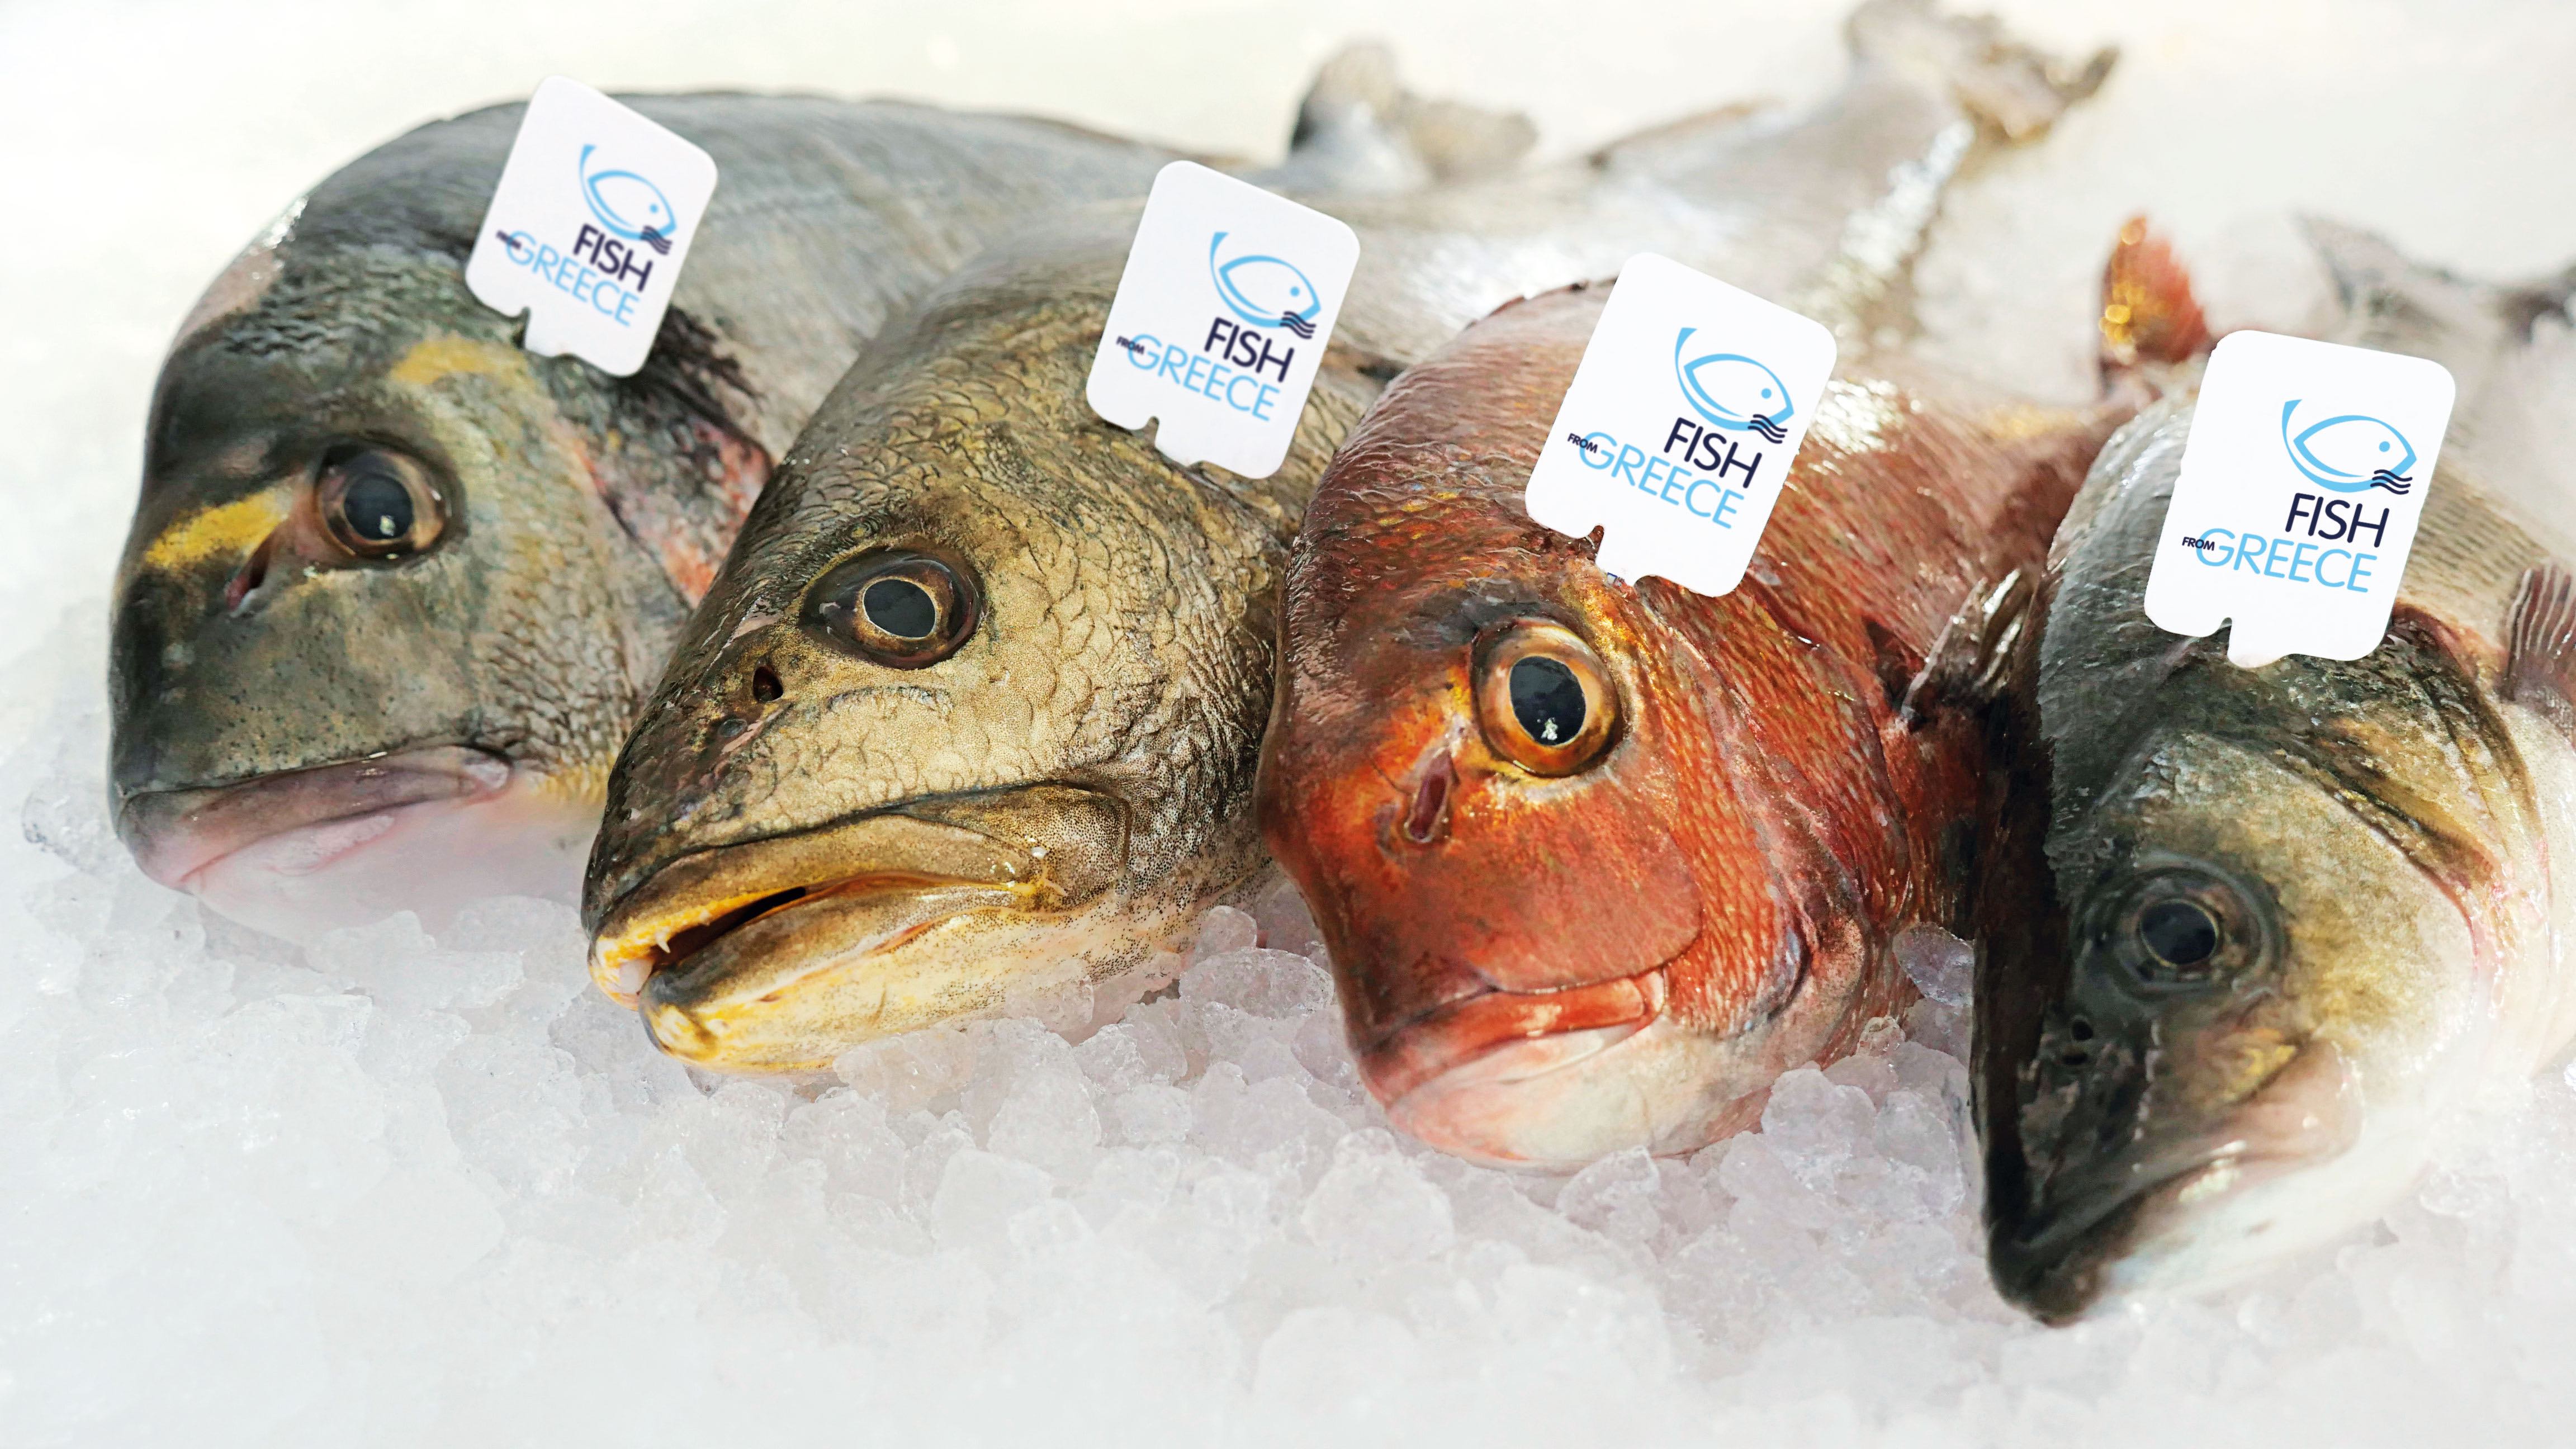 Fish from Greece, il miglior alleato per iniziare l’anno con gusto e leggerezza